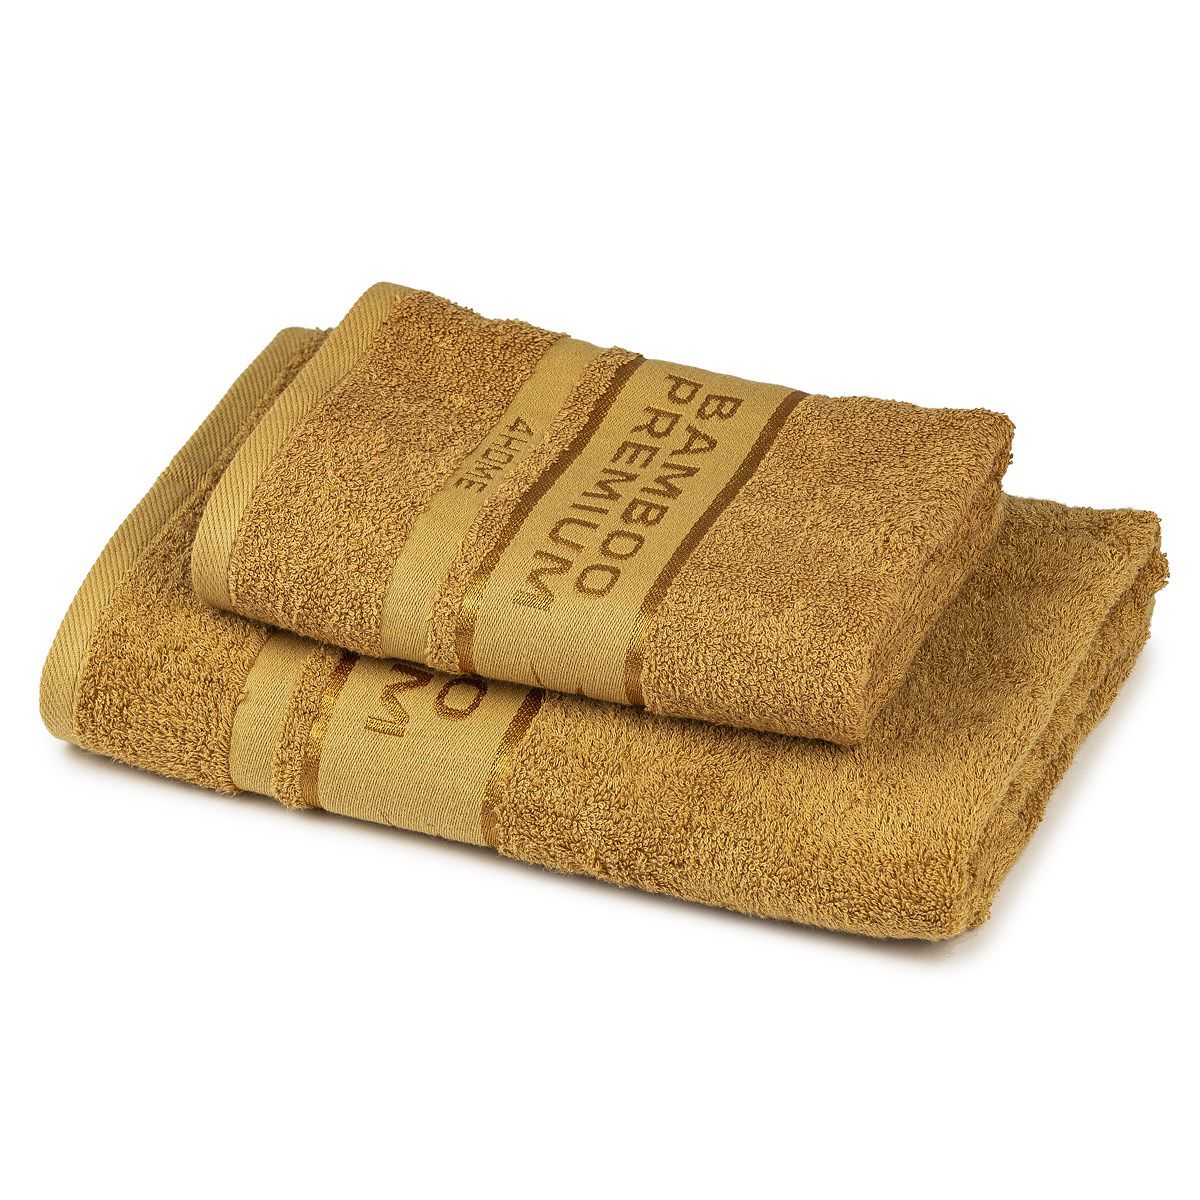 4Home Sada Bamboo Premium osuška a ručník svetlo hnedá, 70 x 140 cm, 50 x 100 cm - 4home.cz